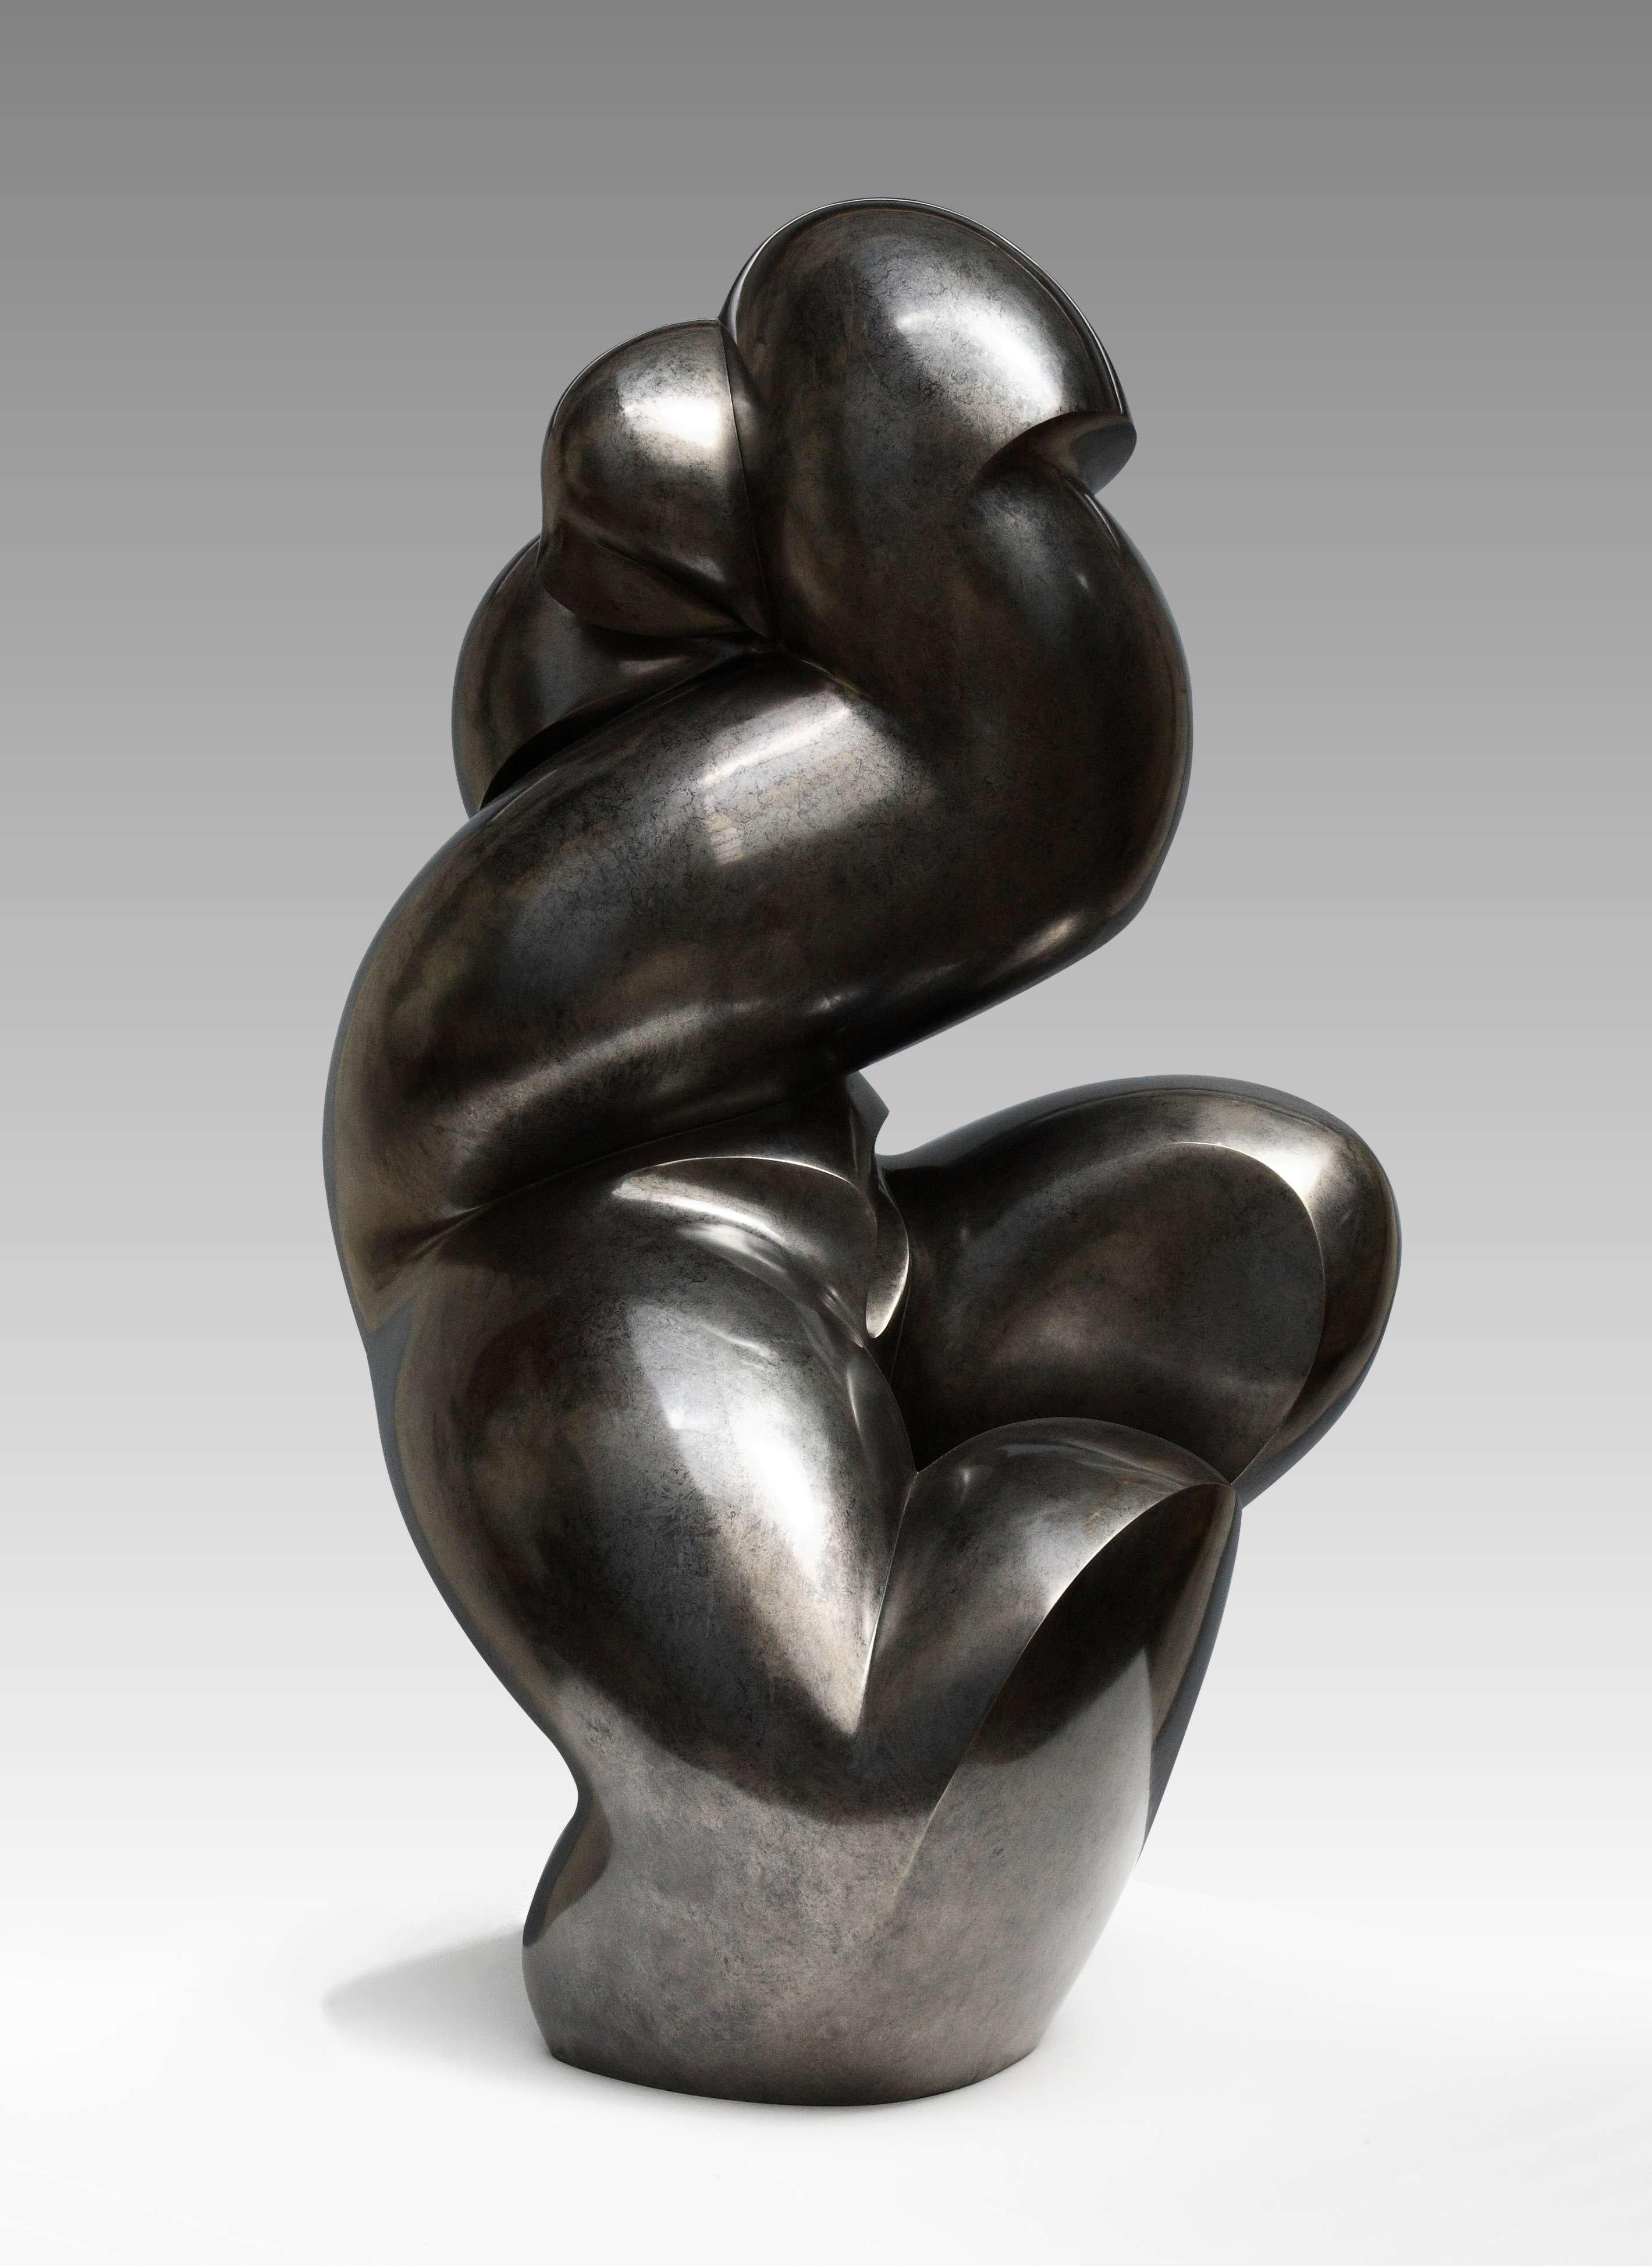 Pollès - Bronze-Skulptur - Eupalinos
Bronze
1/4
Erstellt im Jahr 2010, gecastet im Jahr 2011
116 x 68 x 60 cm
Signiert und nummeriert

BIOGRAPHIE
Pollès wurde 1945 in Paris geboren
Wie Leonard de Vinci auf der Suche nach anatomischer Perfektion,